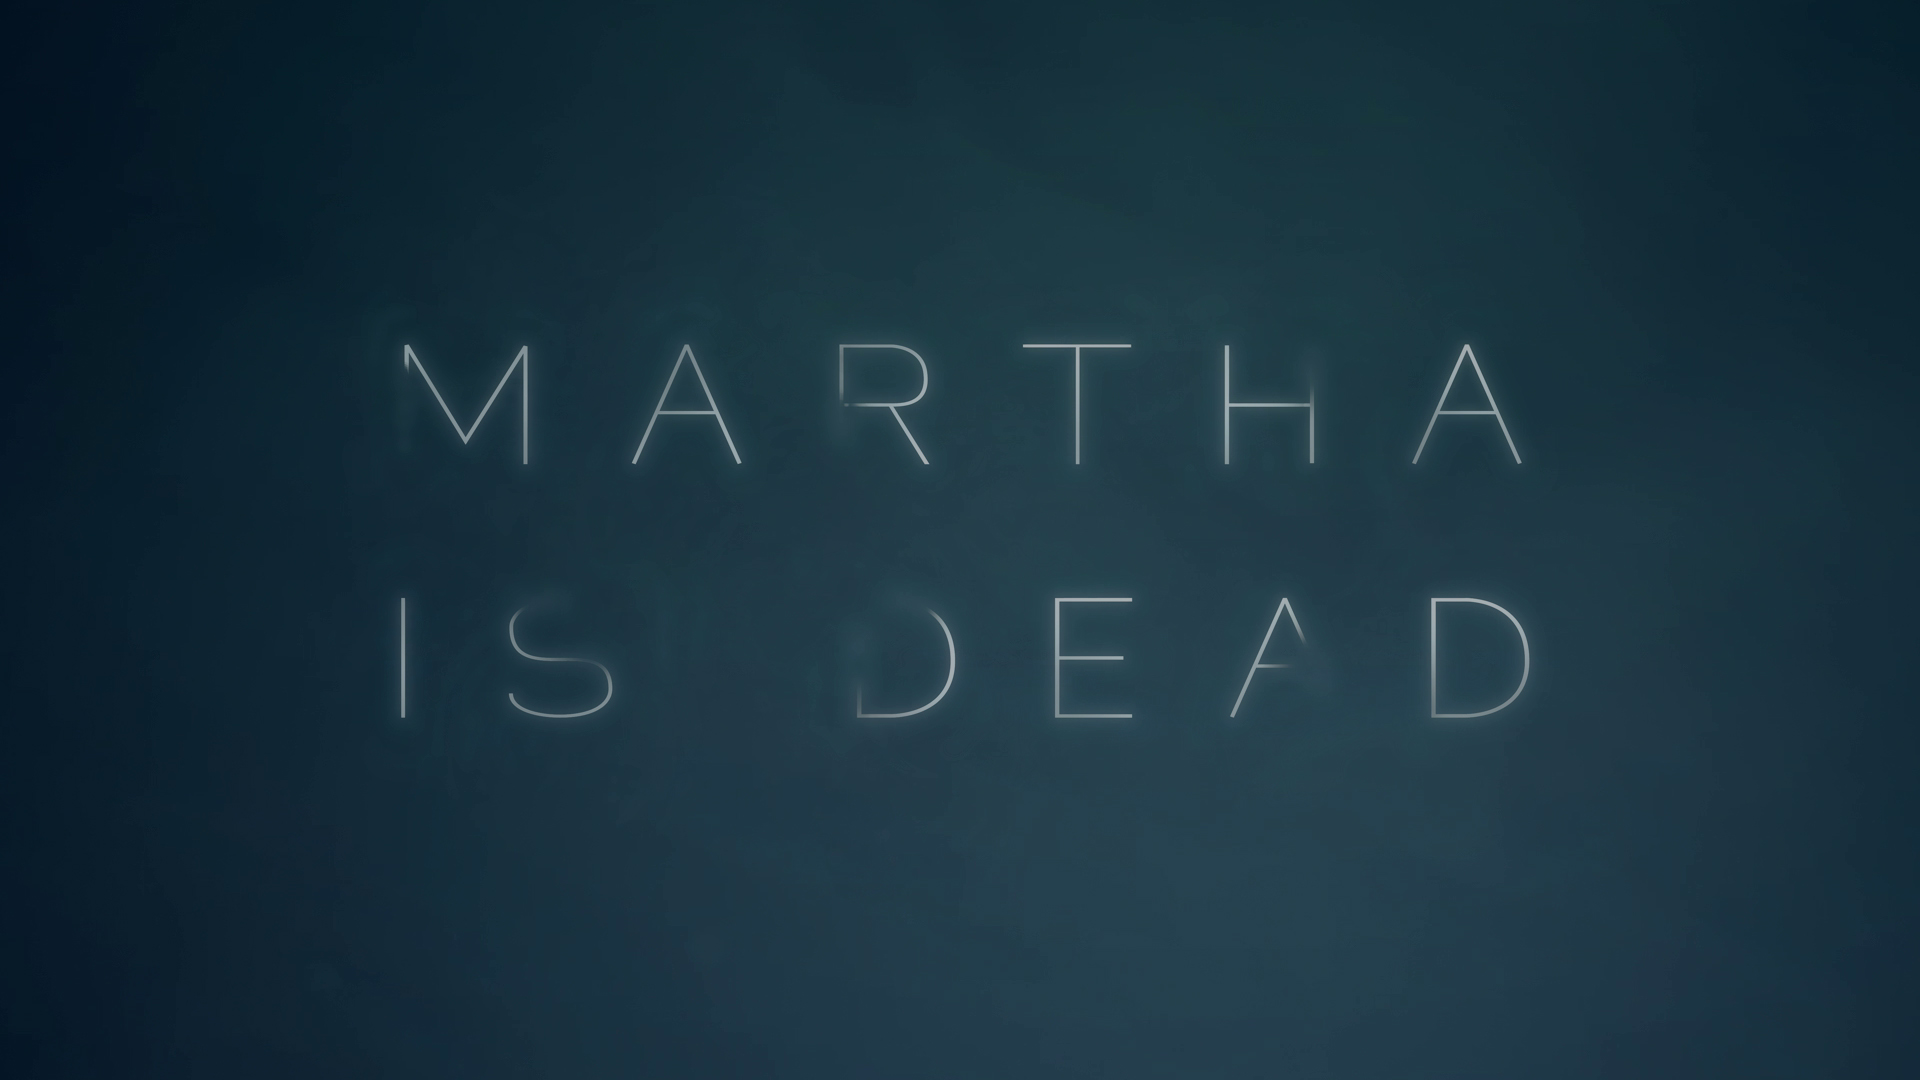 download martha is dead release date